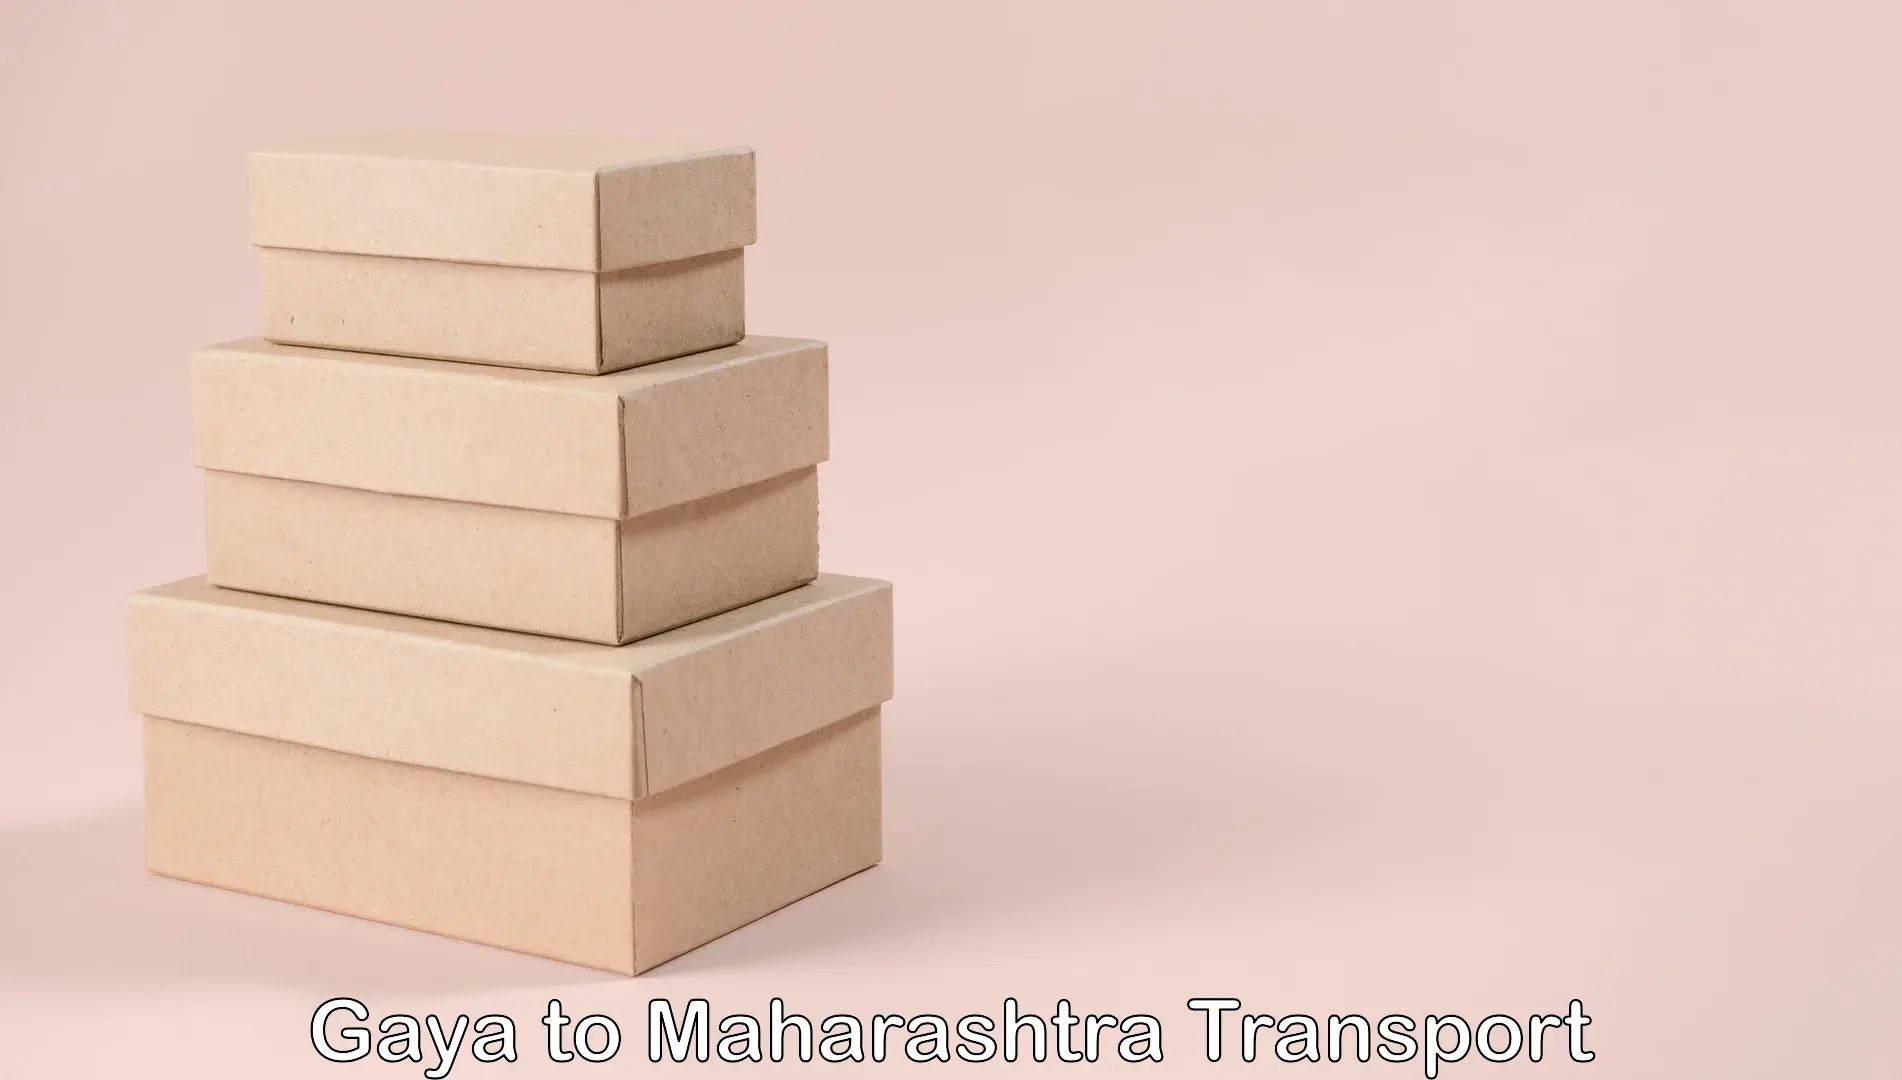 India truck logistics services Gaya to Maharashtra